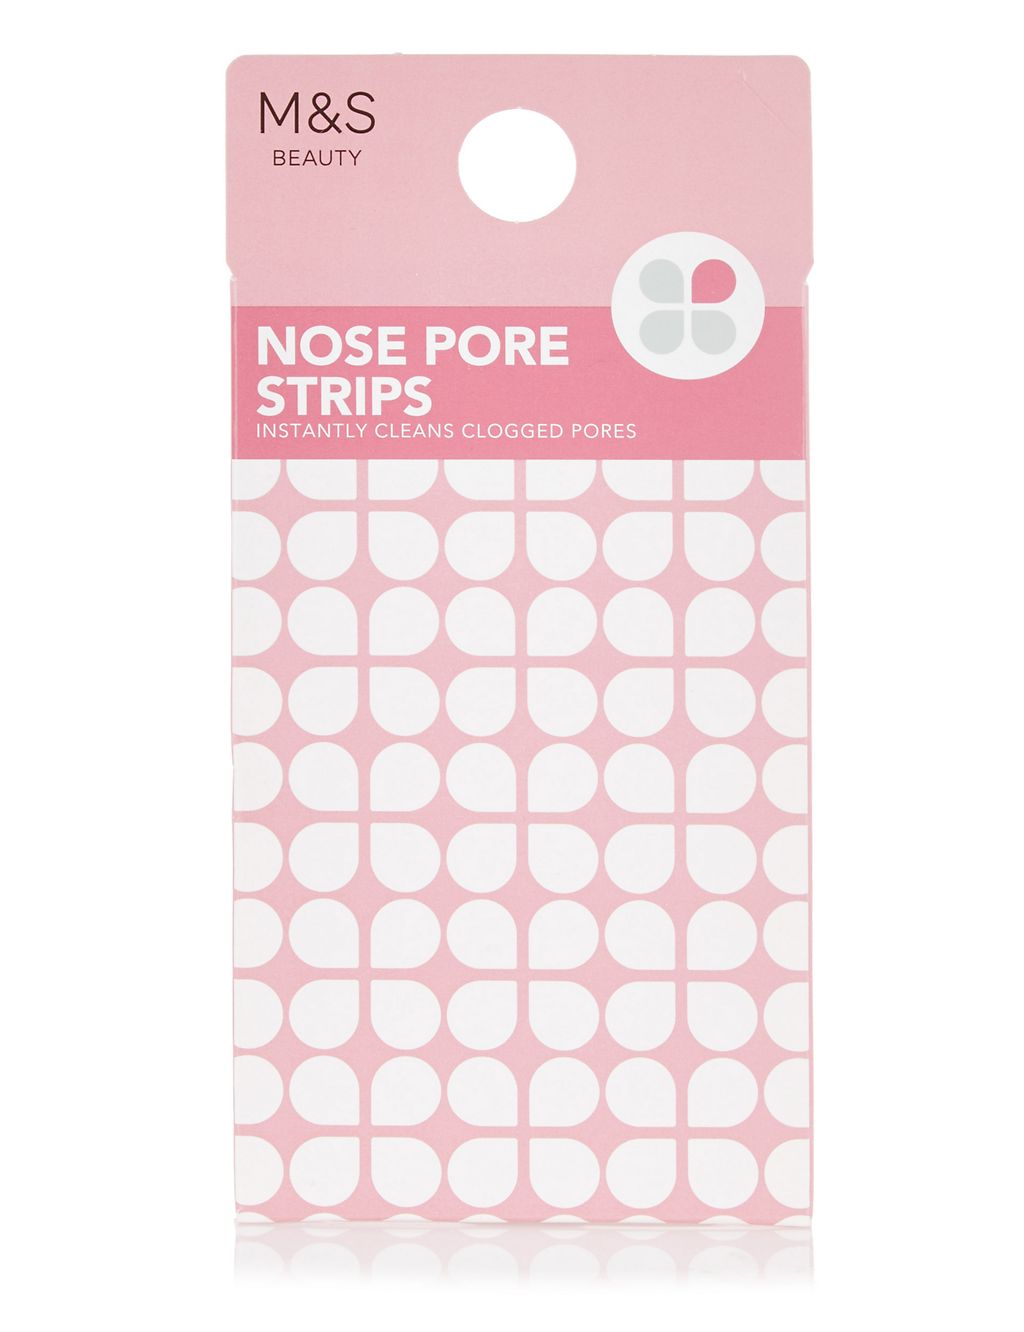 Nose Pore Strips 1 of 2